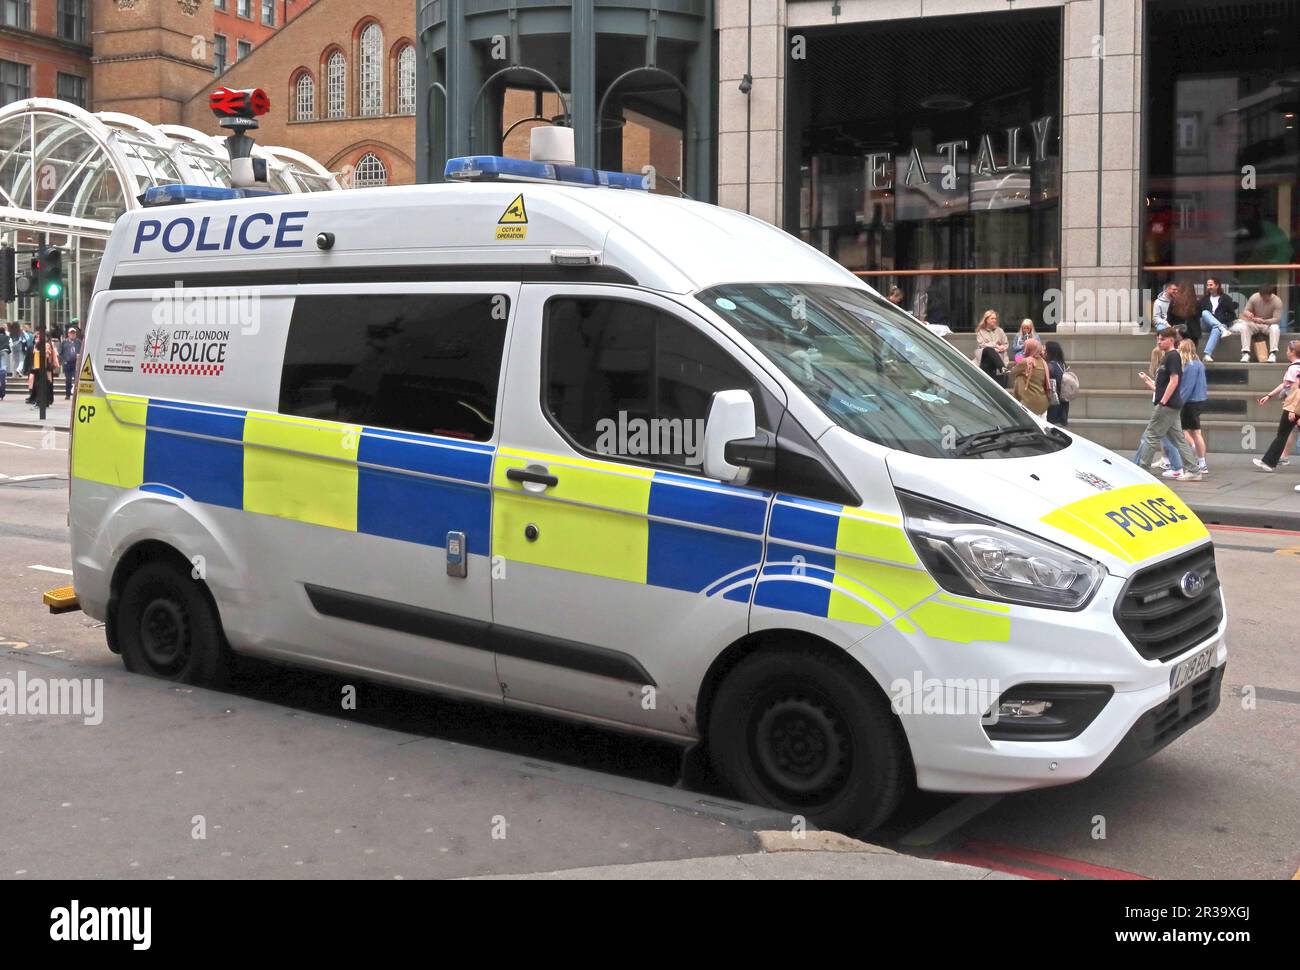 Ville de Londres camionnette de police près du poste de police, Bishopsgate, Londres, Angleterre, Royaume-Uni, EC2M 4NP Banque D'Images